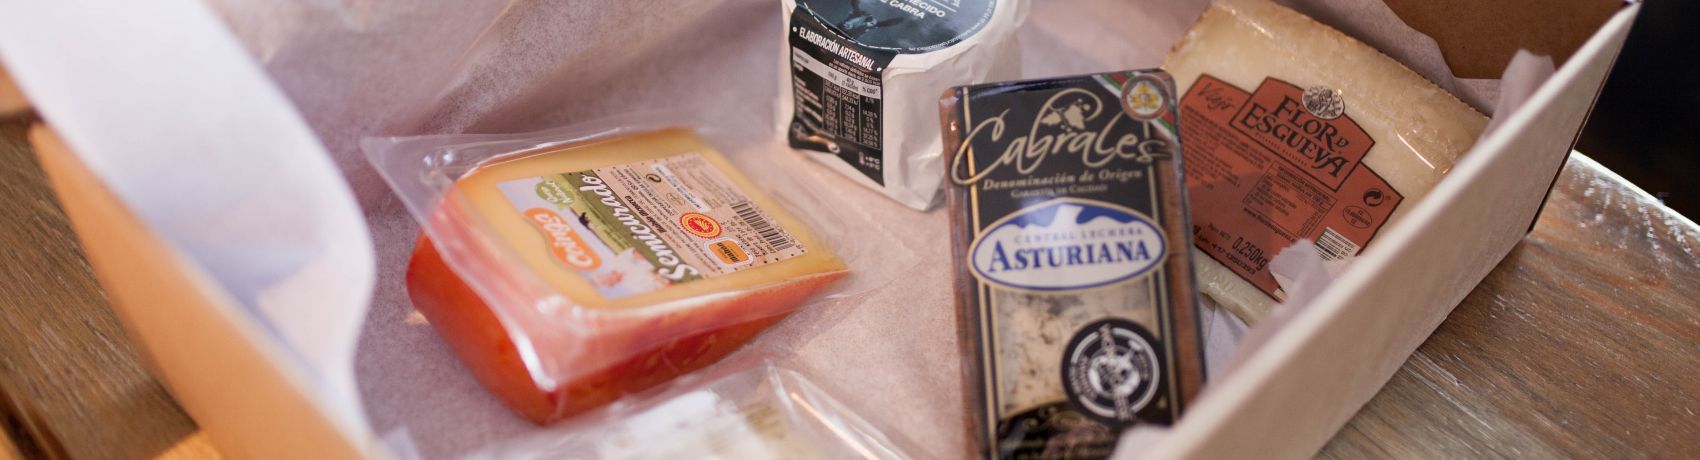 Consejos para conservar el queso (I) - Es Queso